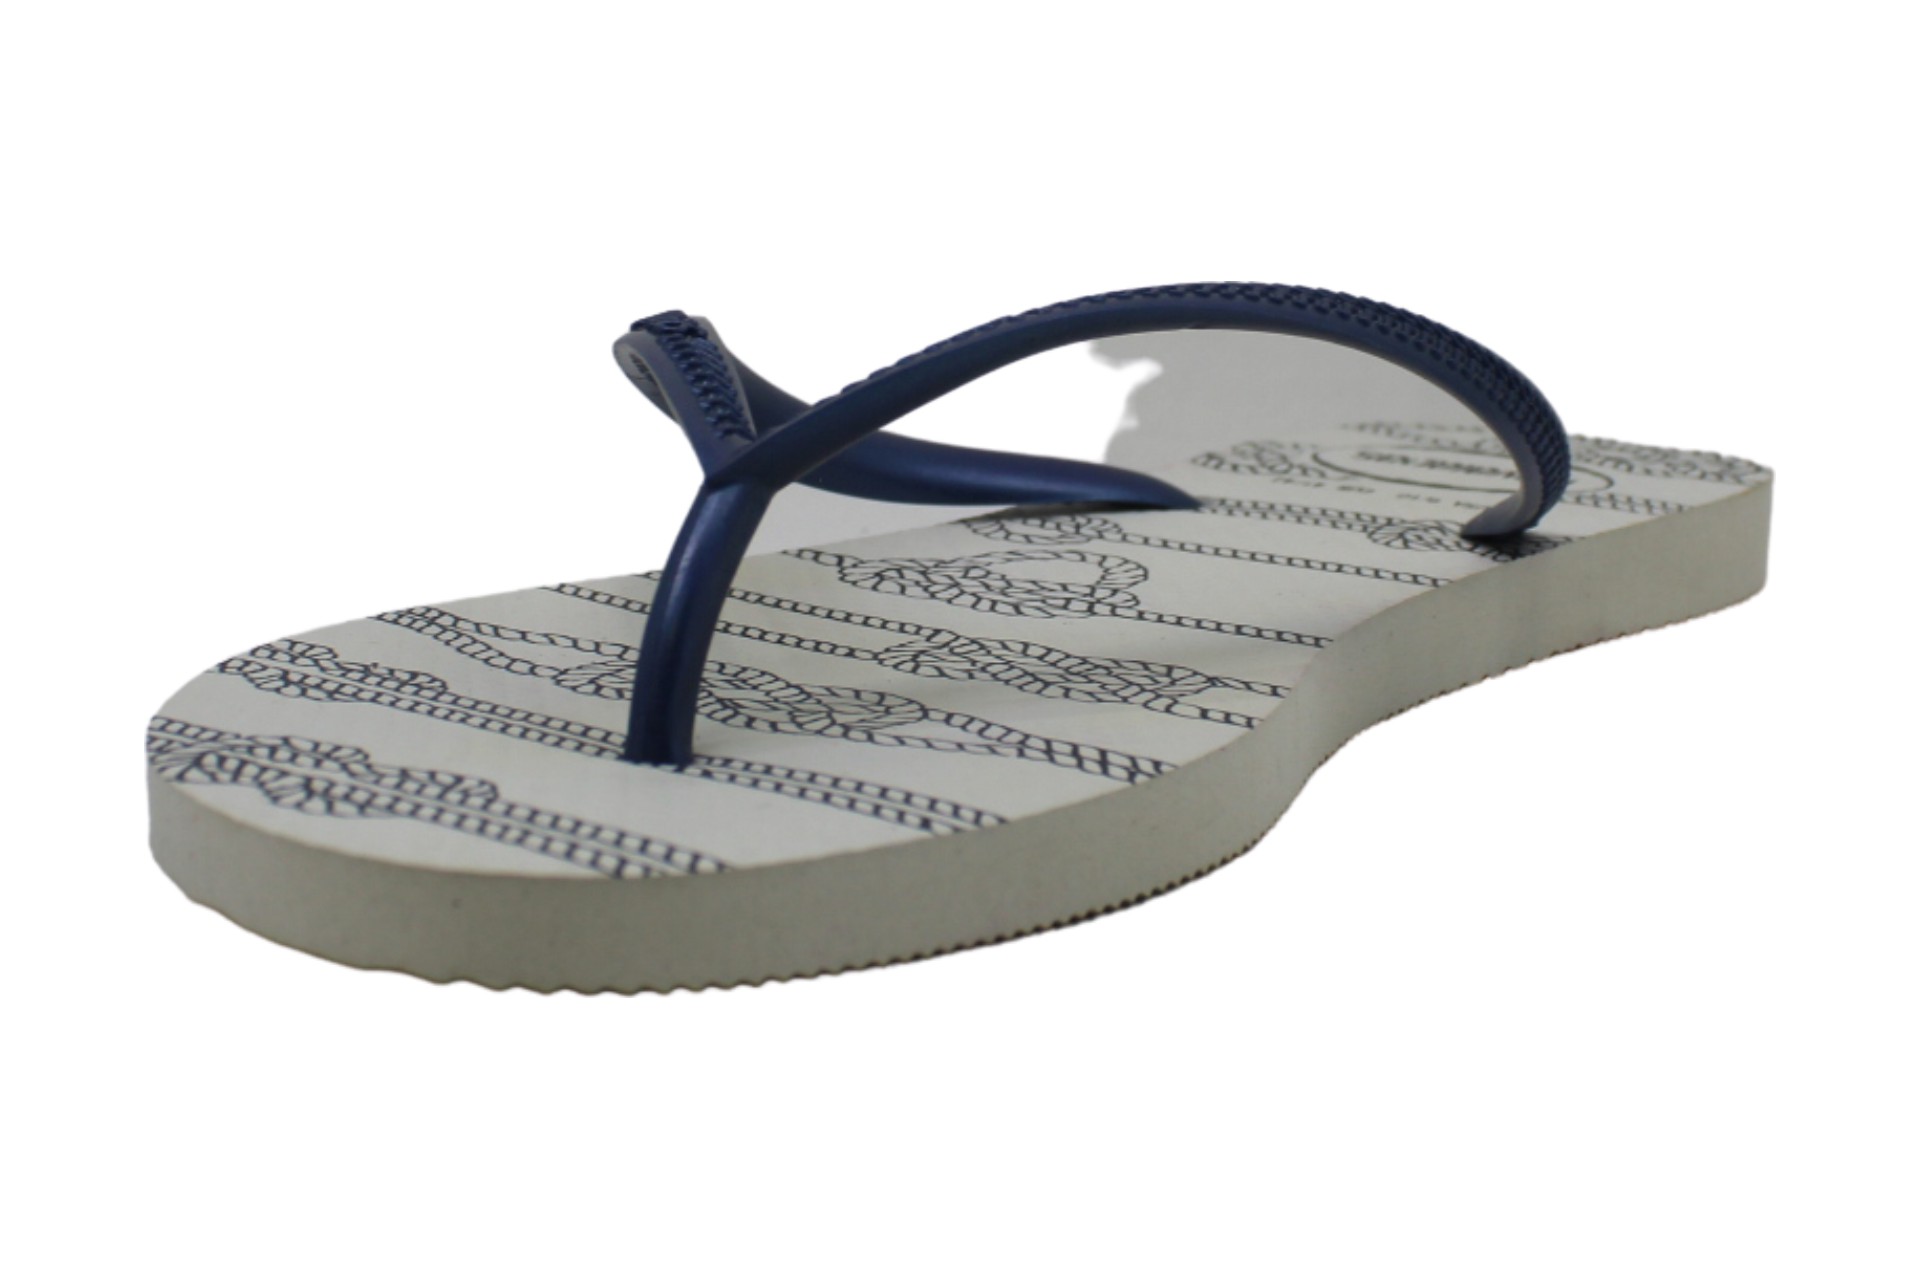 Havaianas Women's Slim Flip Flop Sandals, Nautical, White, Size 9.5 | eBay